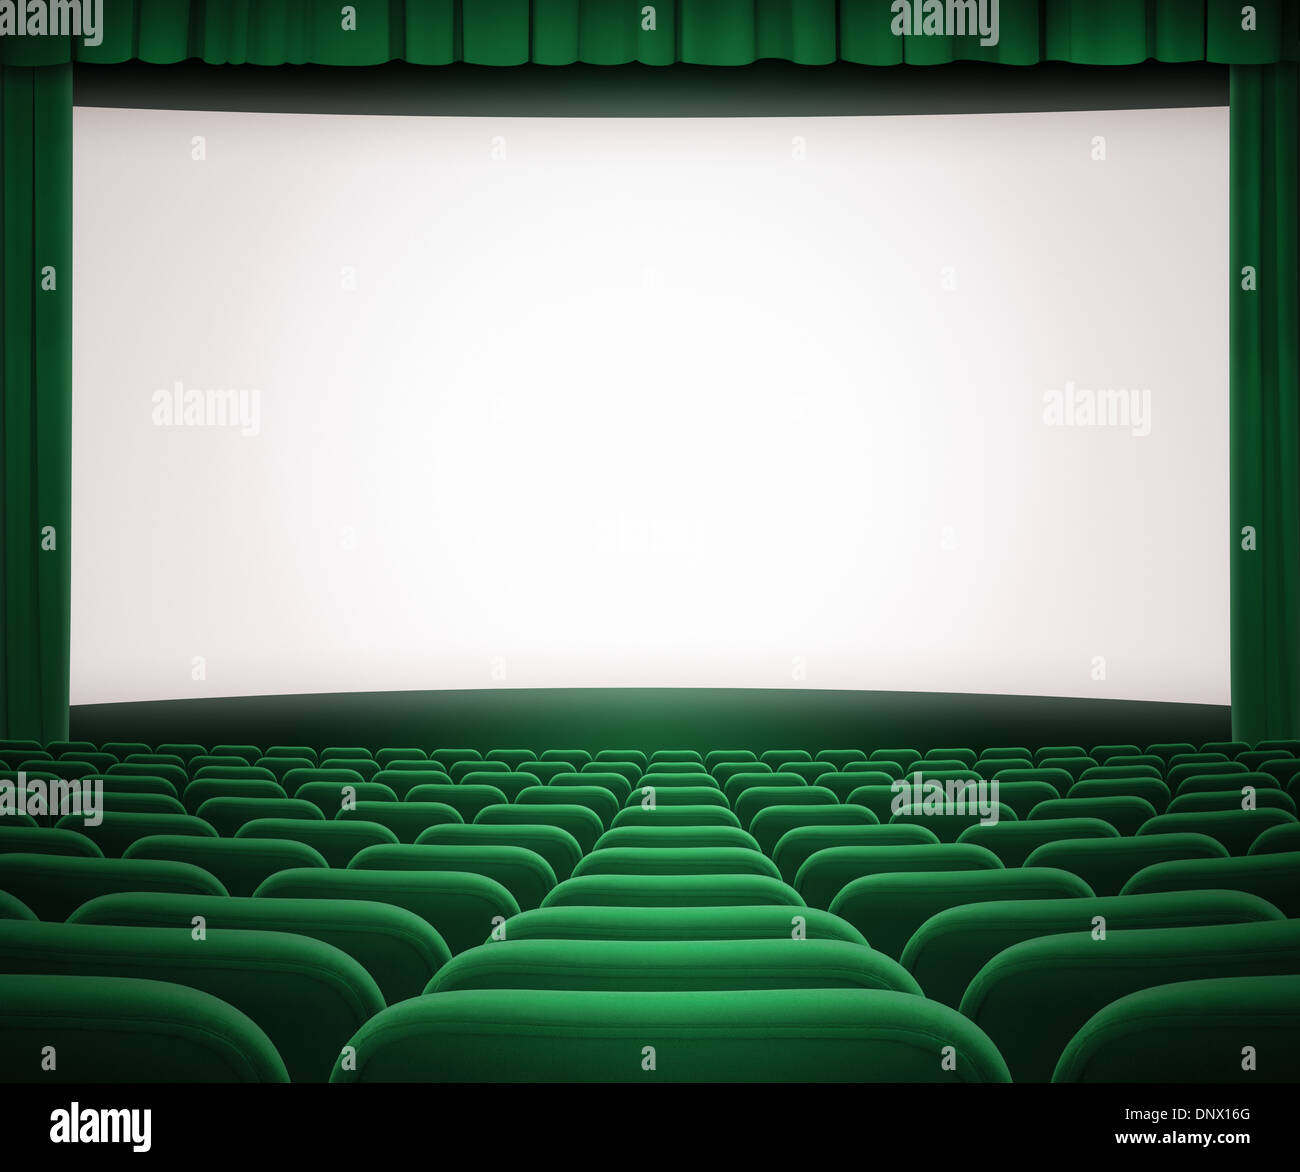 Kinoleinwand mit offenen grünen Vorhang und Sitze Stockfoto